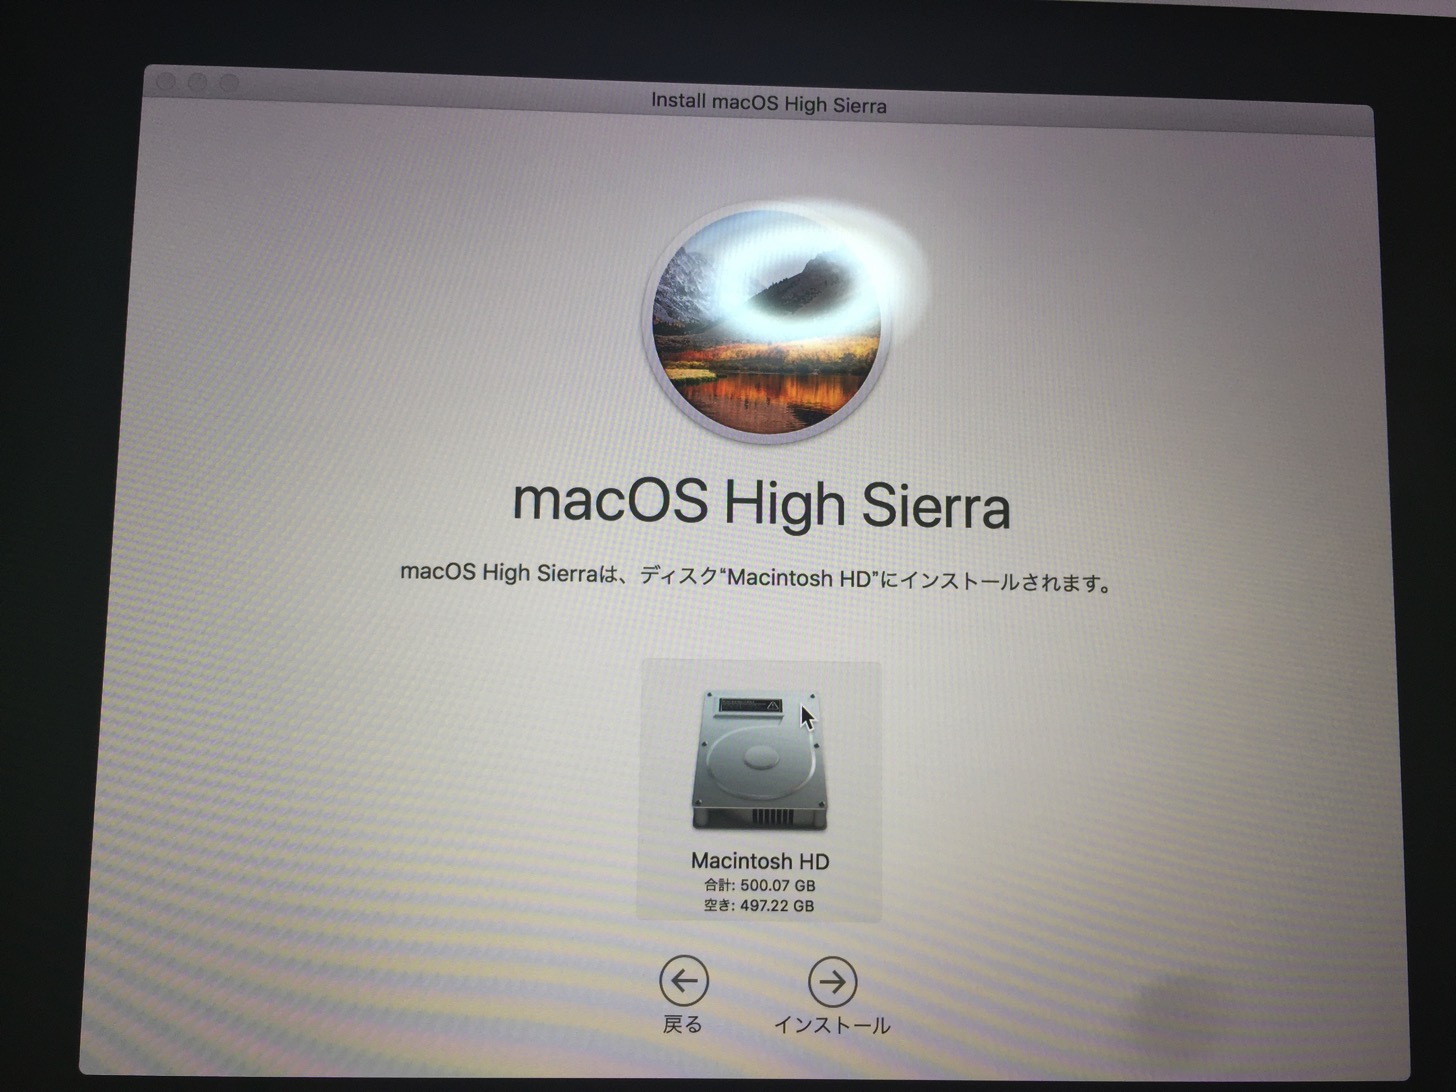 Macintosh HDを選択してインストールボタンをクリック。